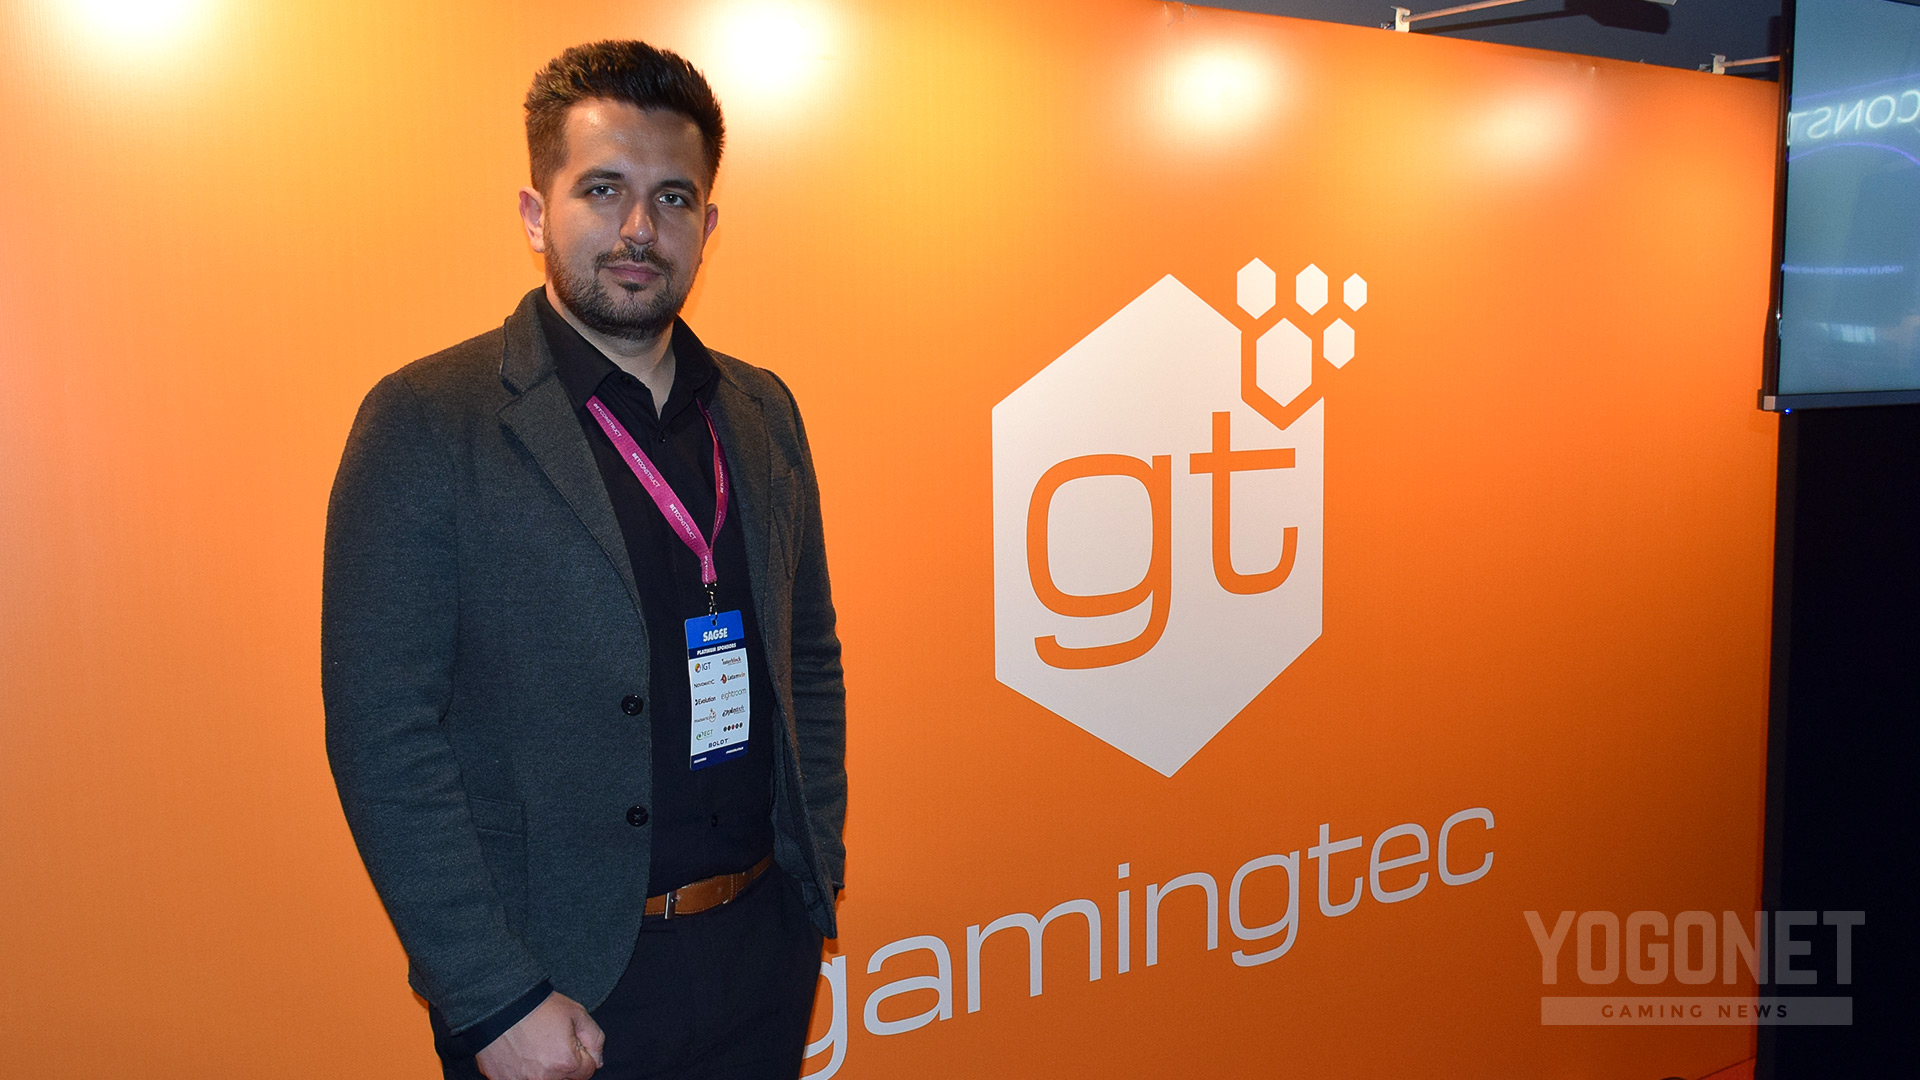 Gamingtec: “Flexibility is something that sets us apart”